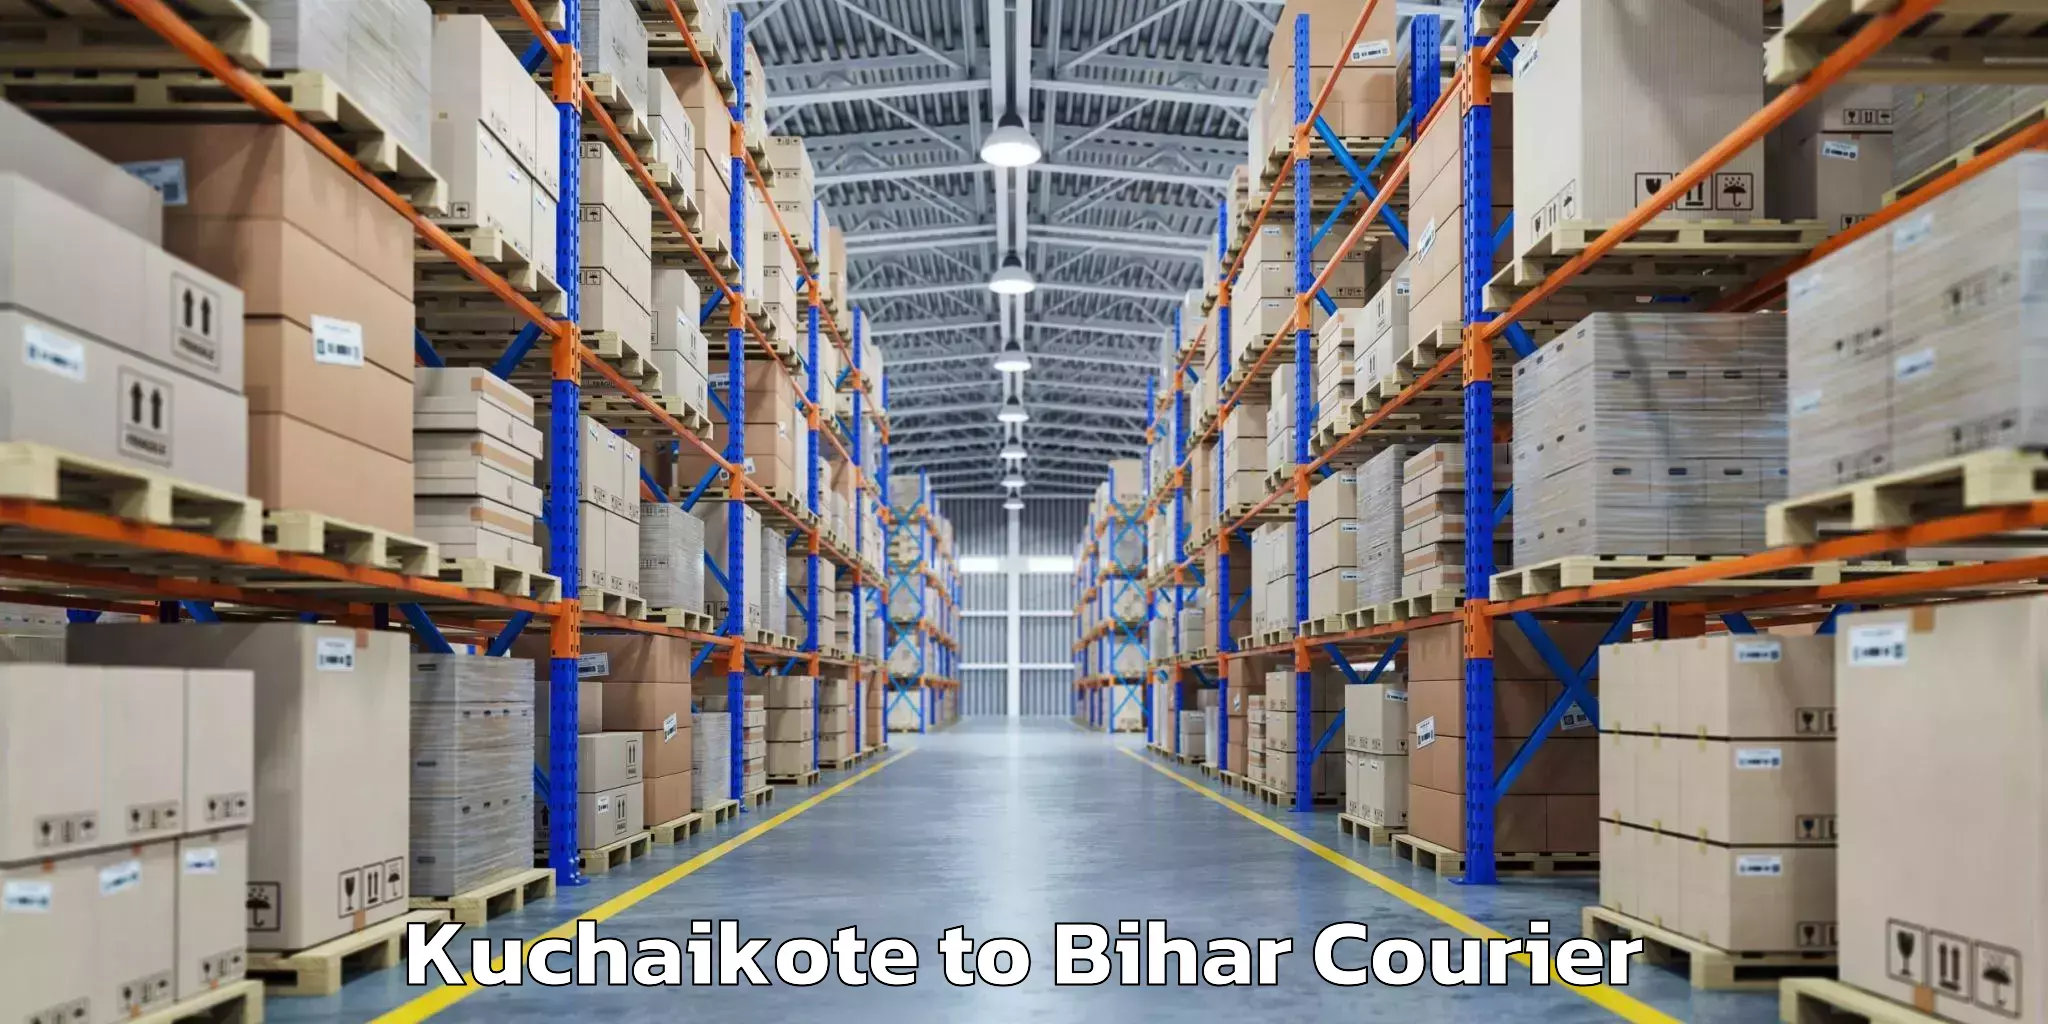 Baggage transport network Kuchaikote to Bihar Sharif